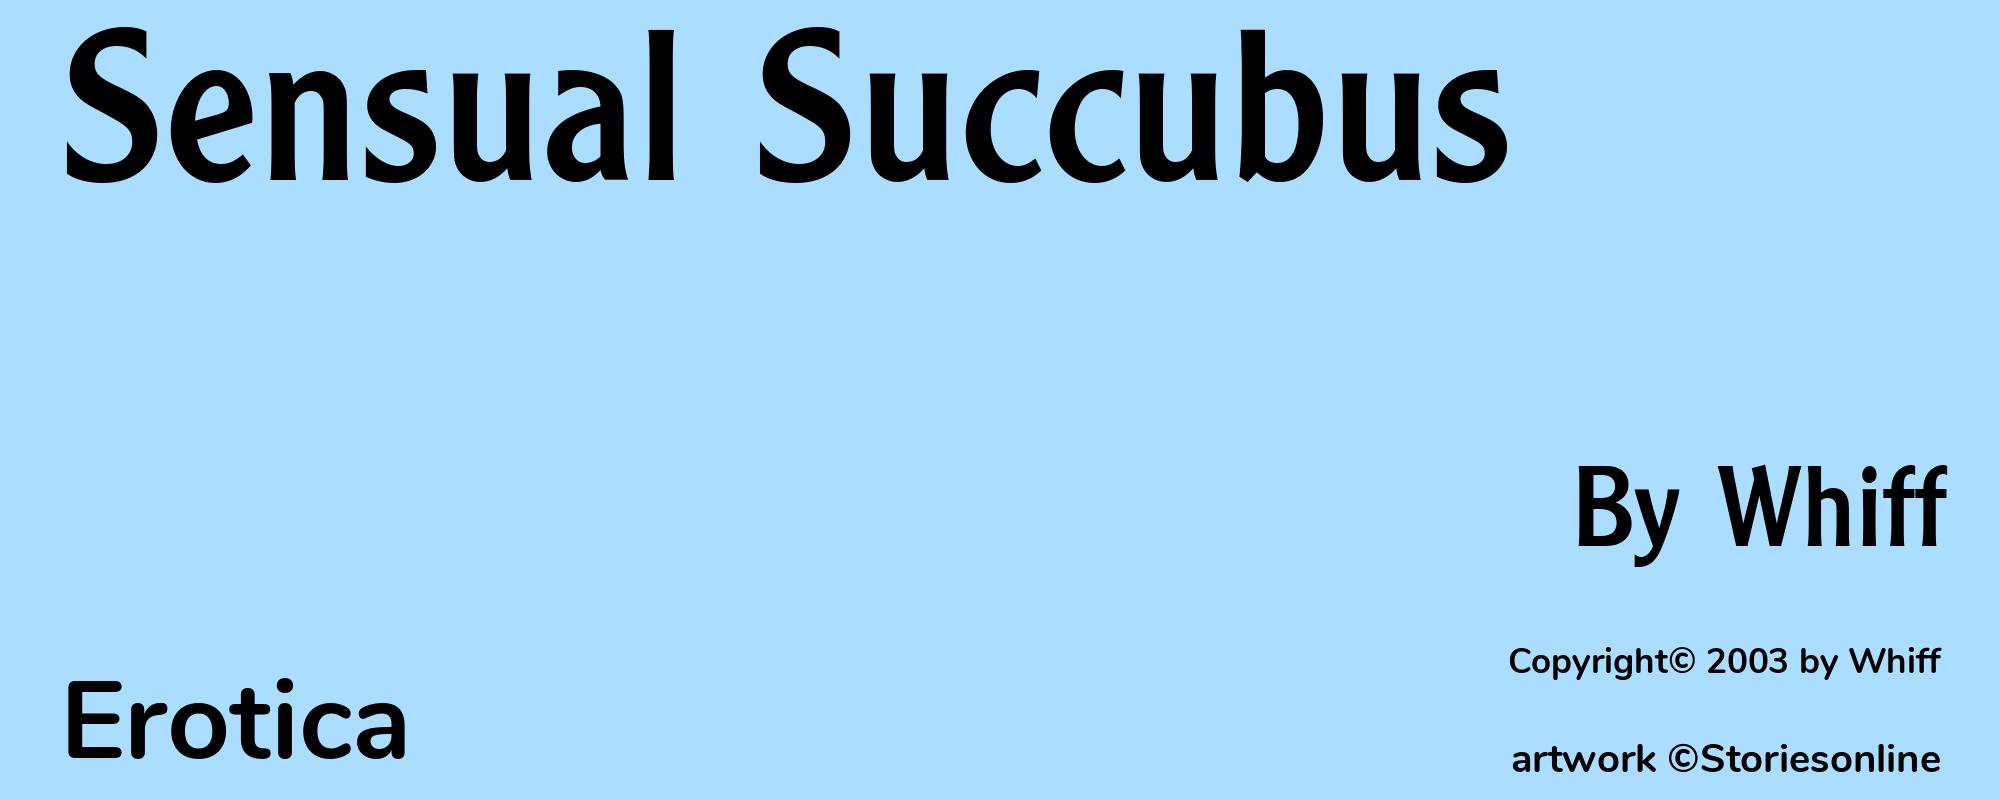 Sensual Succubus - Cover